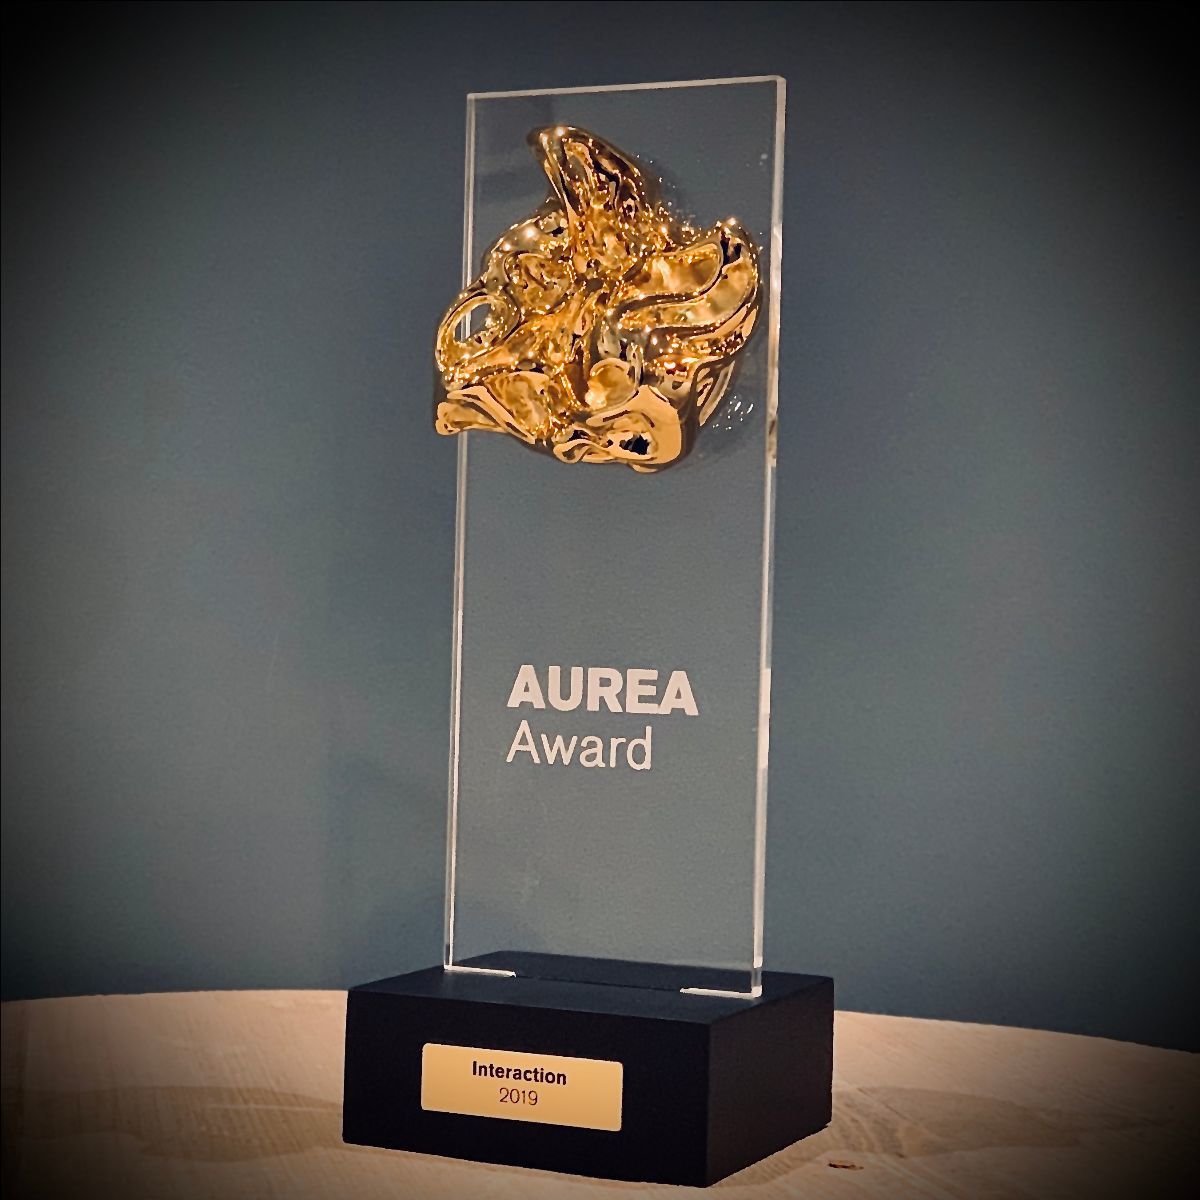 Aurea award winner